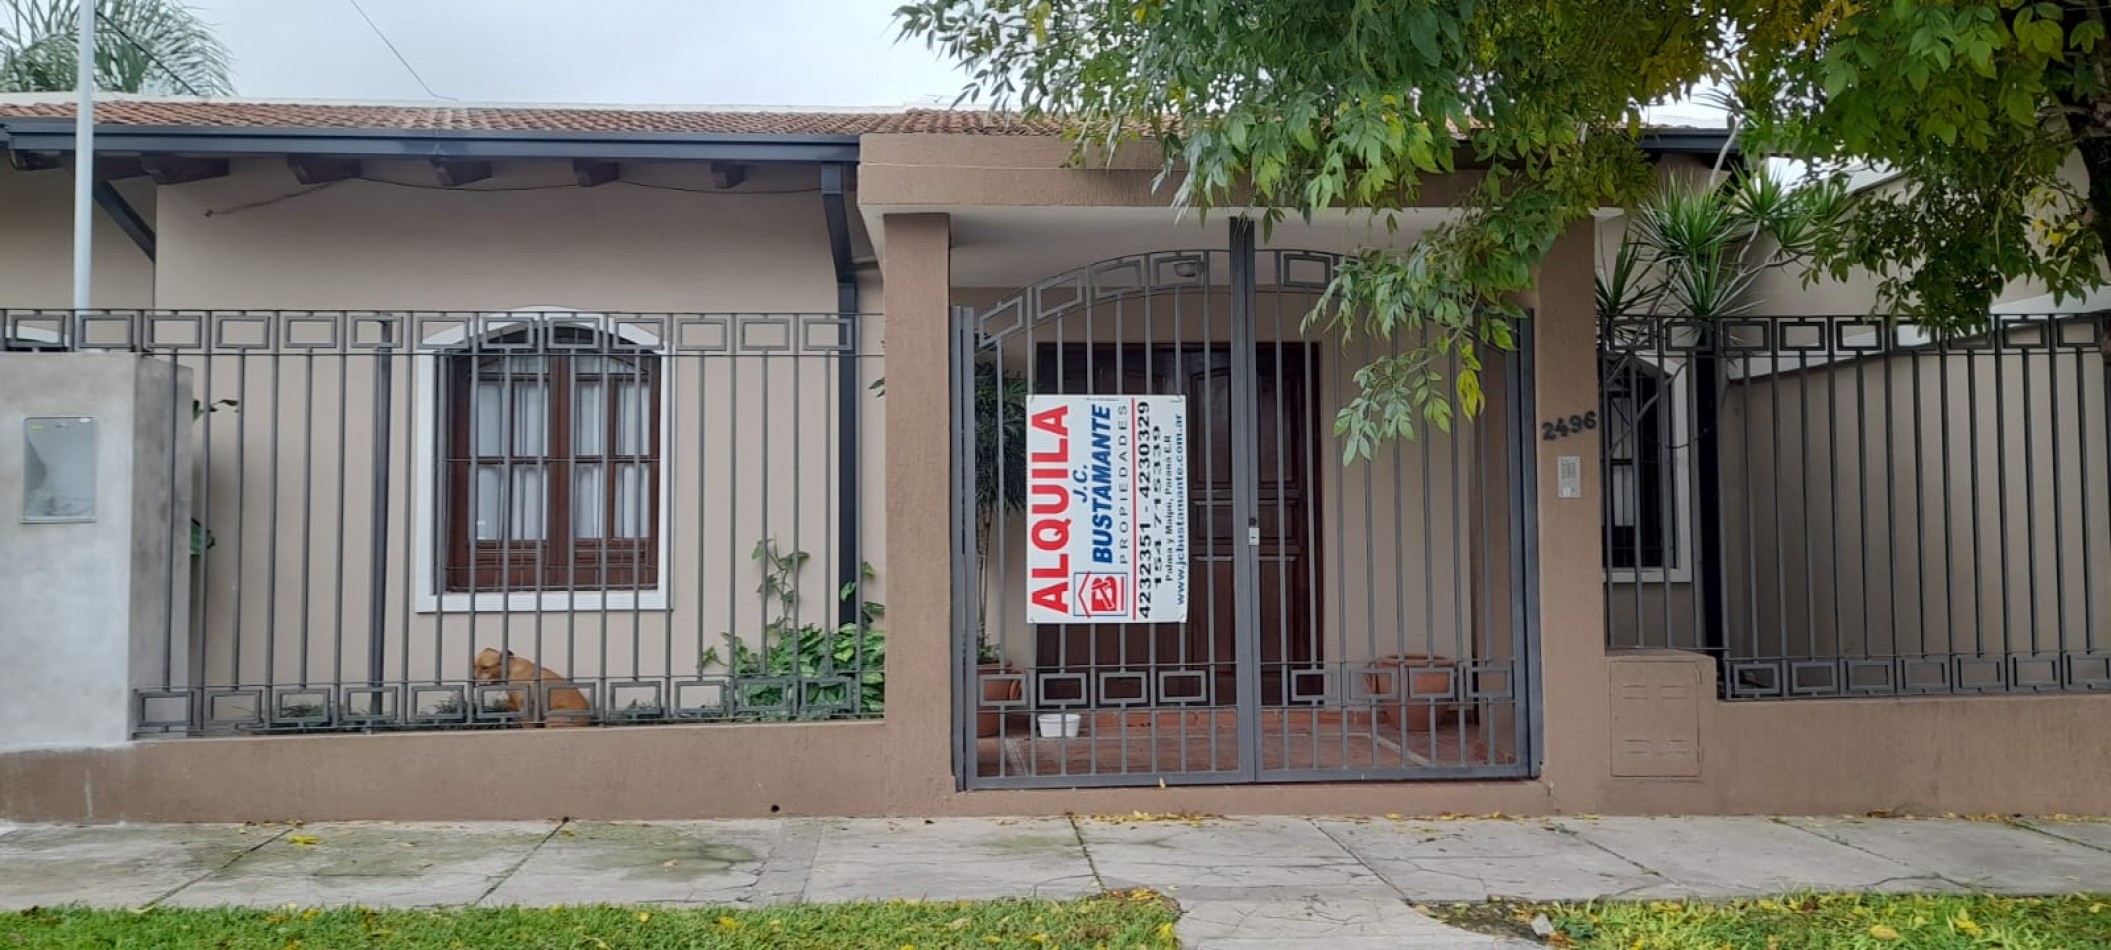 Alquiler casa calle Belisario Roldan y Casa Cuberta